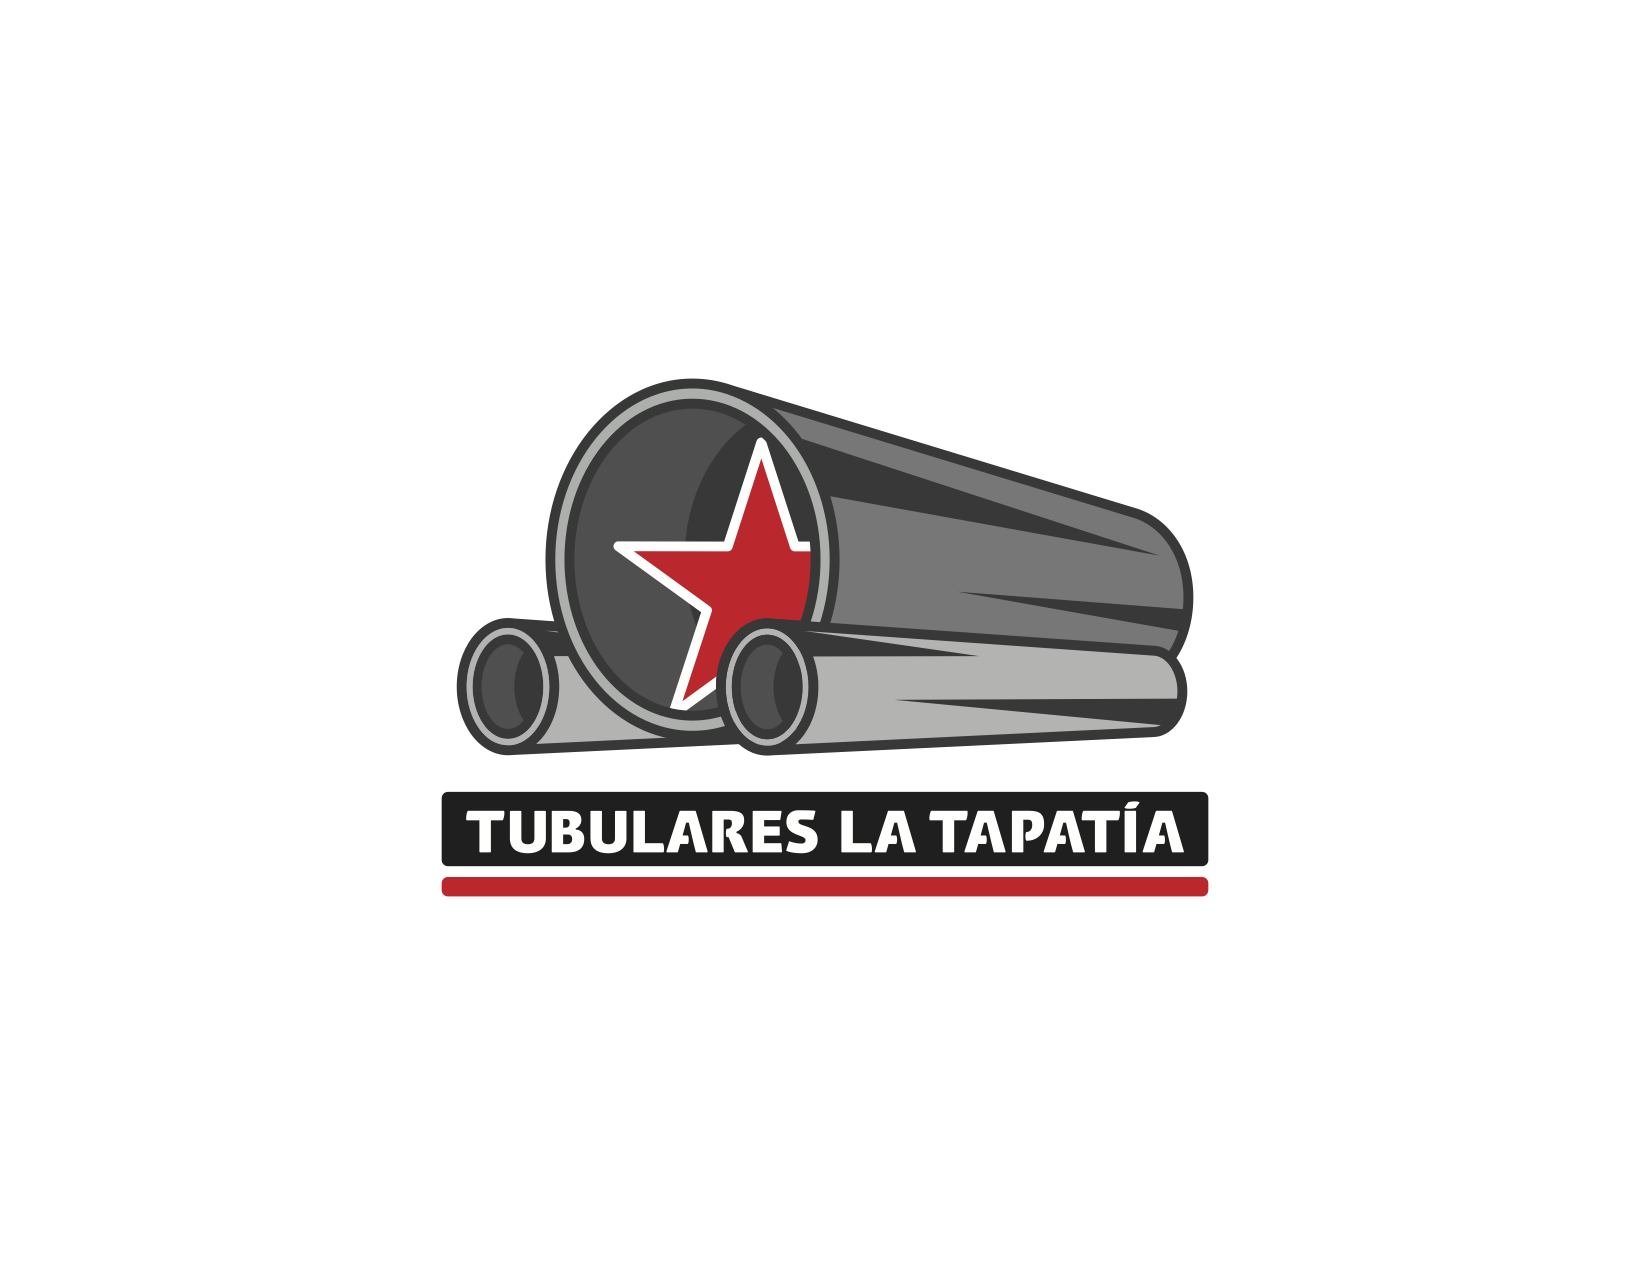 Tubulares La Tapatia